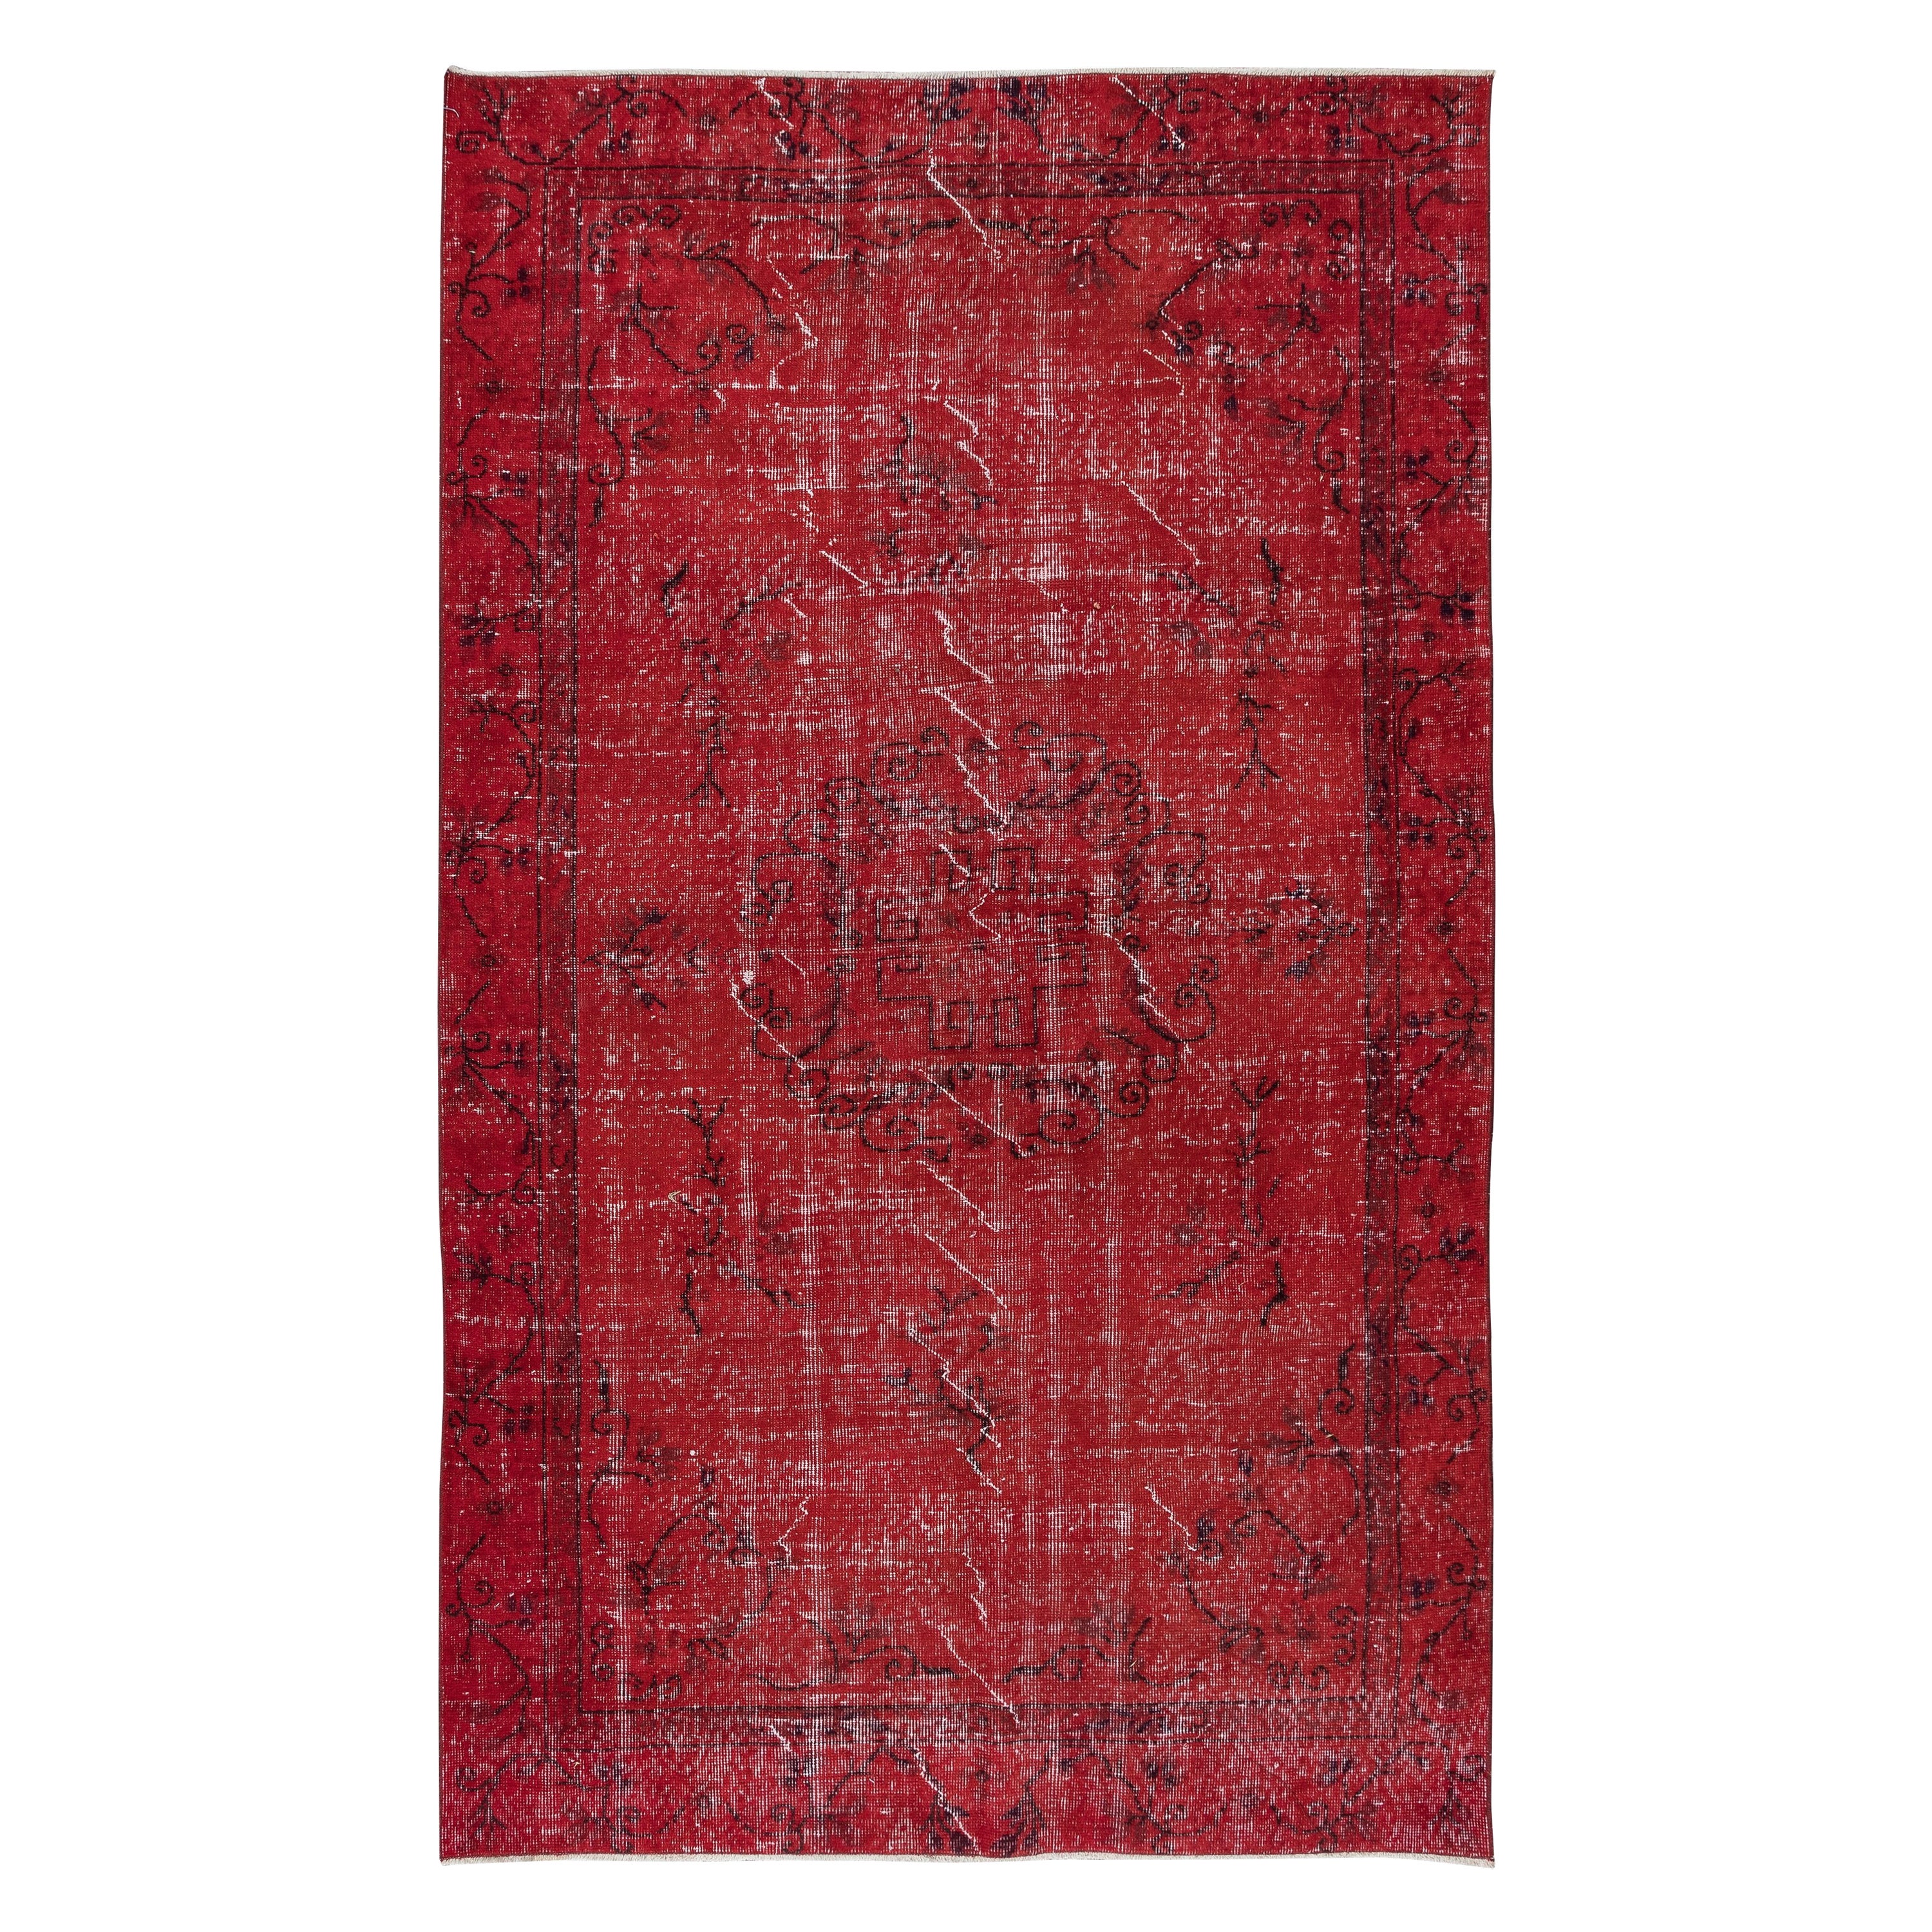 5x8.4 Ft authentischer türkischer handgefertigter Teppich in Rot, großartiger 4 moderner Inneneinrichtung